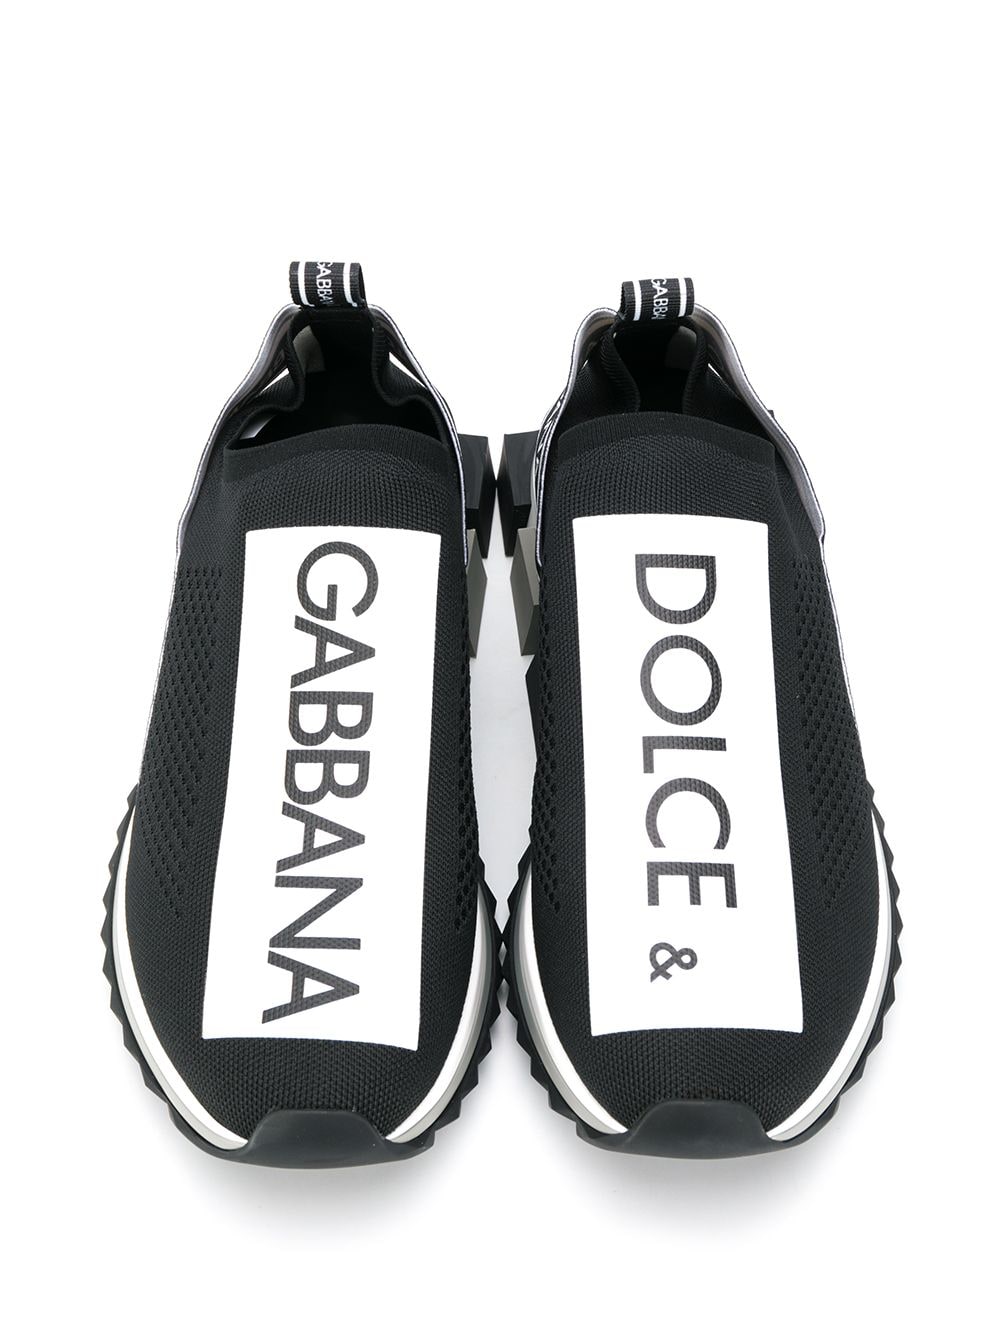 фото Dolce & Gabbana слипоны Sorrento